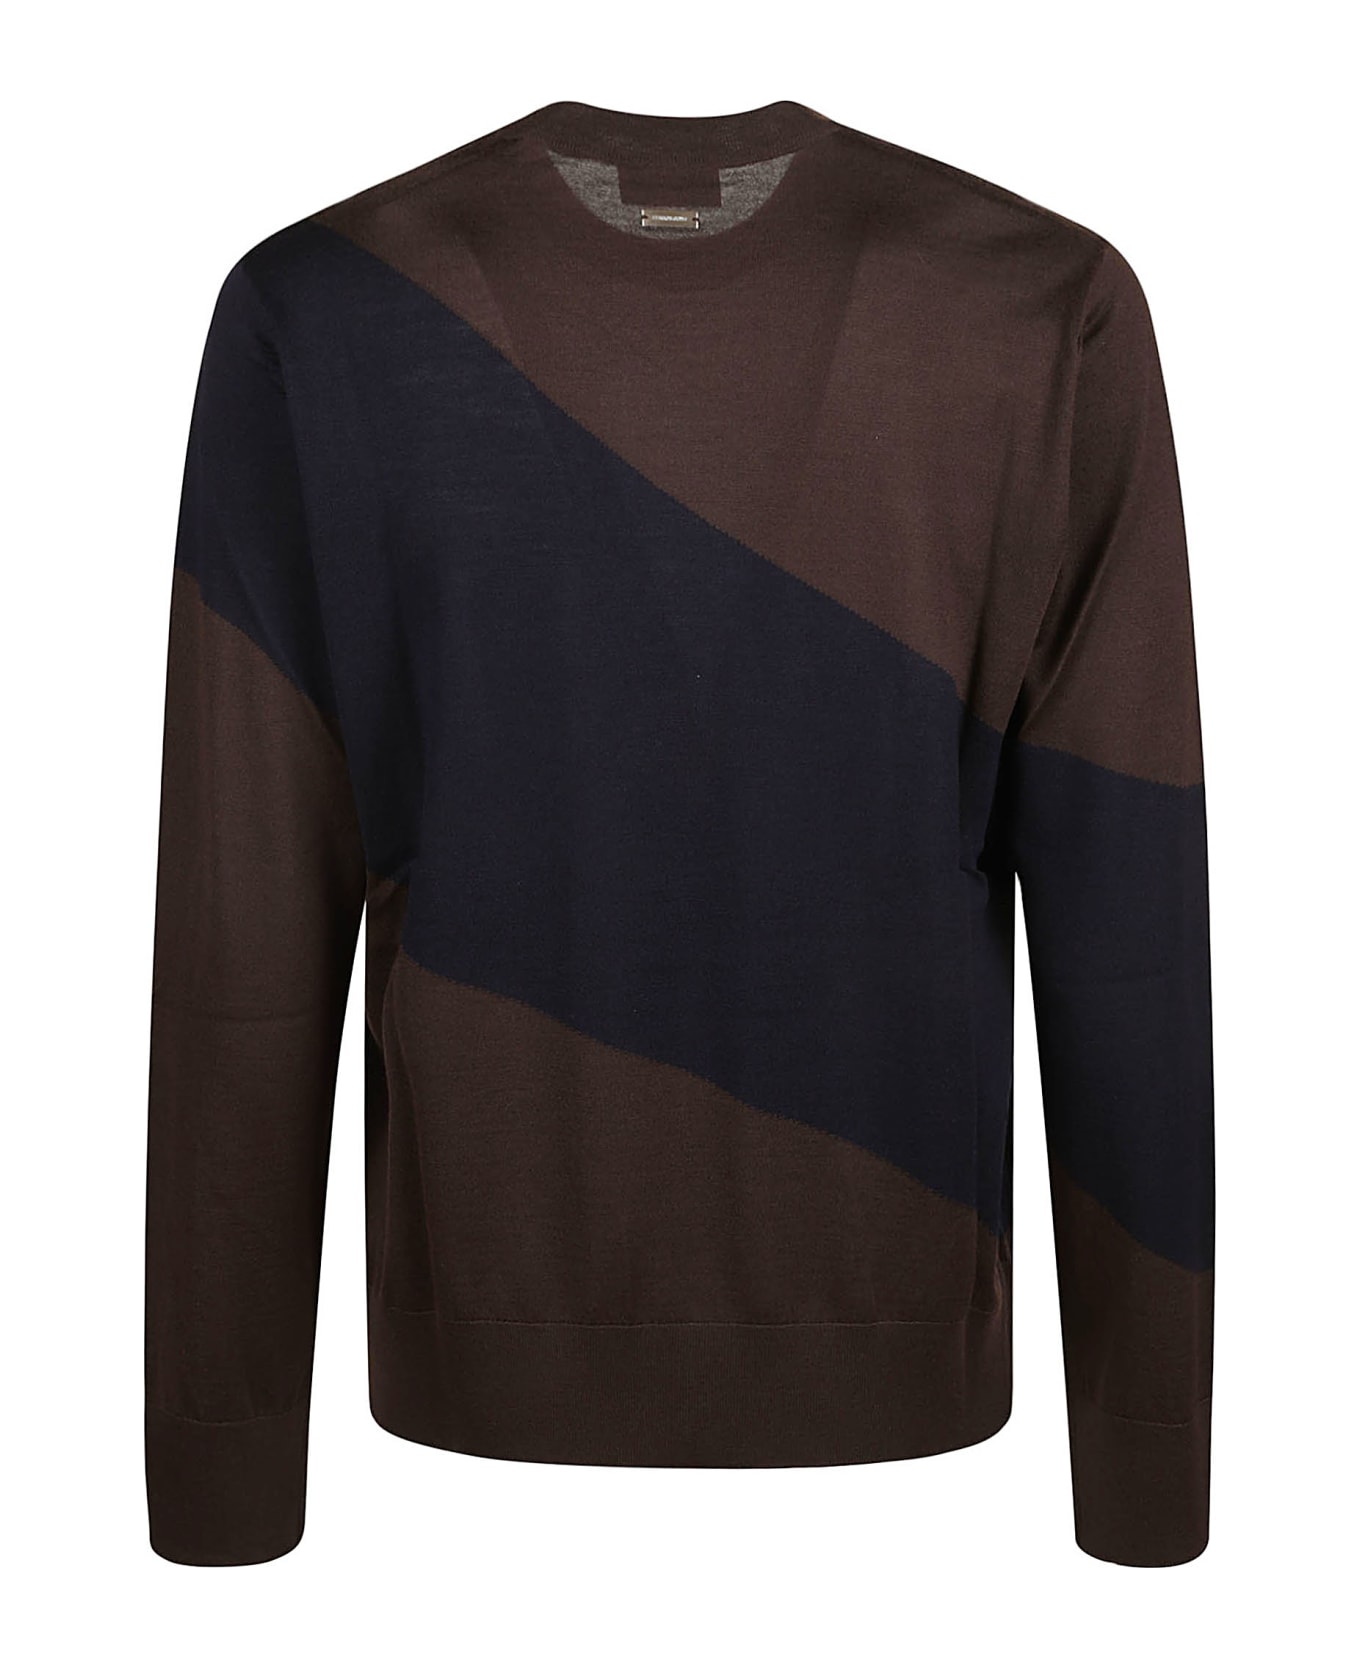 Ferragamo Round Neck Sweater - Brown